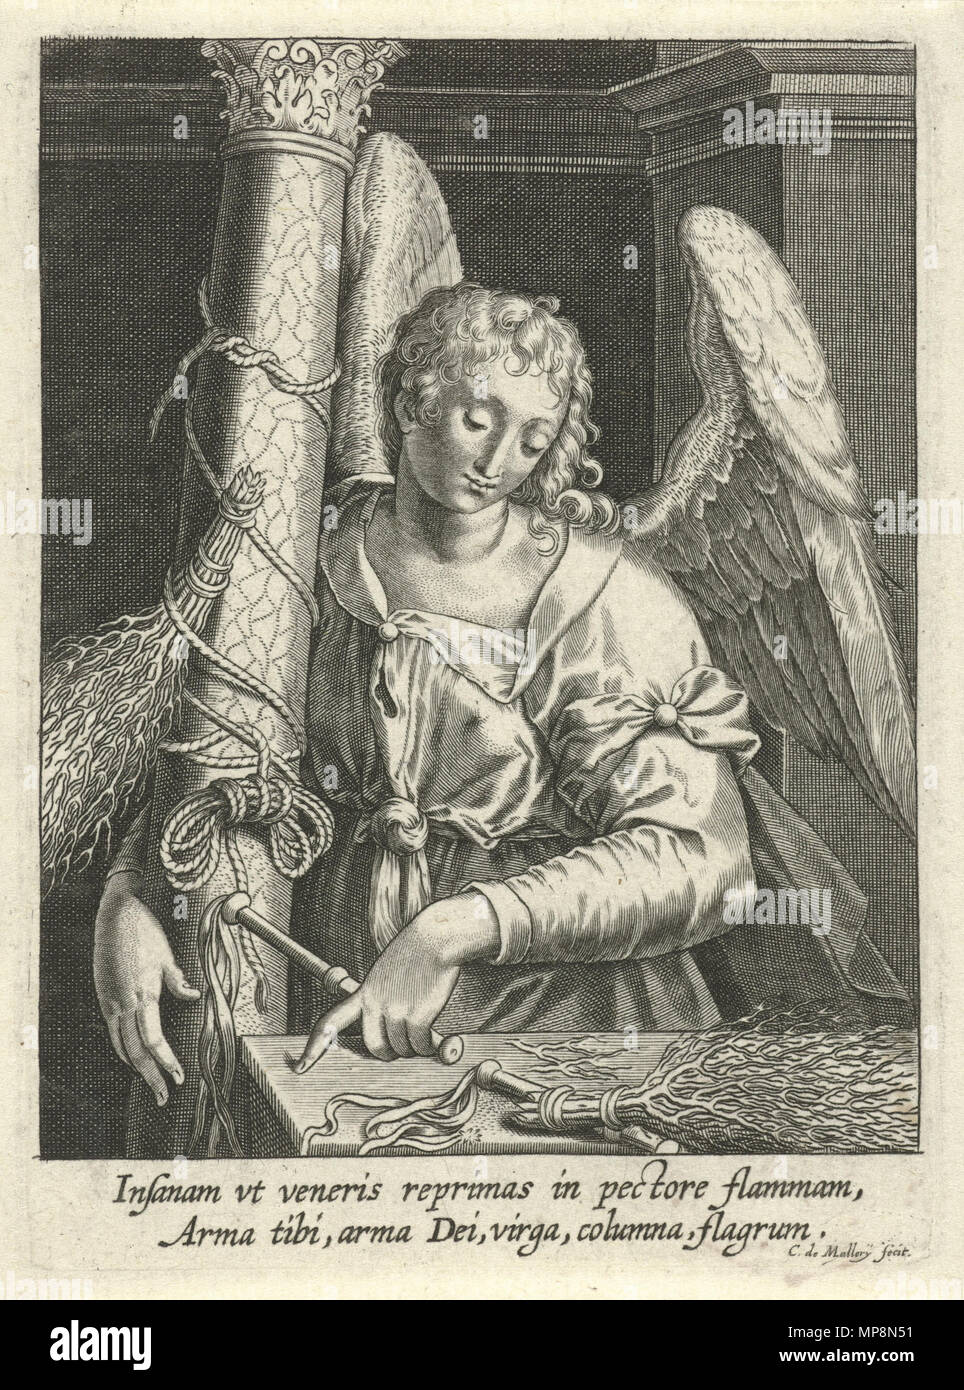 Englisch: Engel mit Geißelsäule und Peitsche Nederlands: Engel met geselpaal en gesels 1581 - C. 1645. 757 Karel van Mallery - Engel mit Geißelsäule und Peitsche Stockfoto